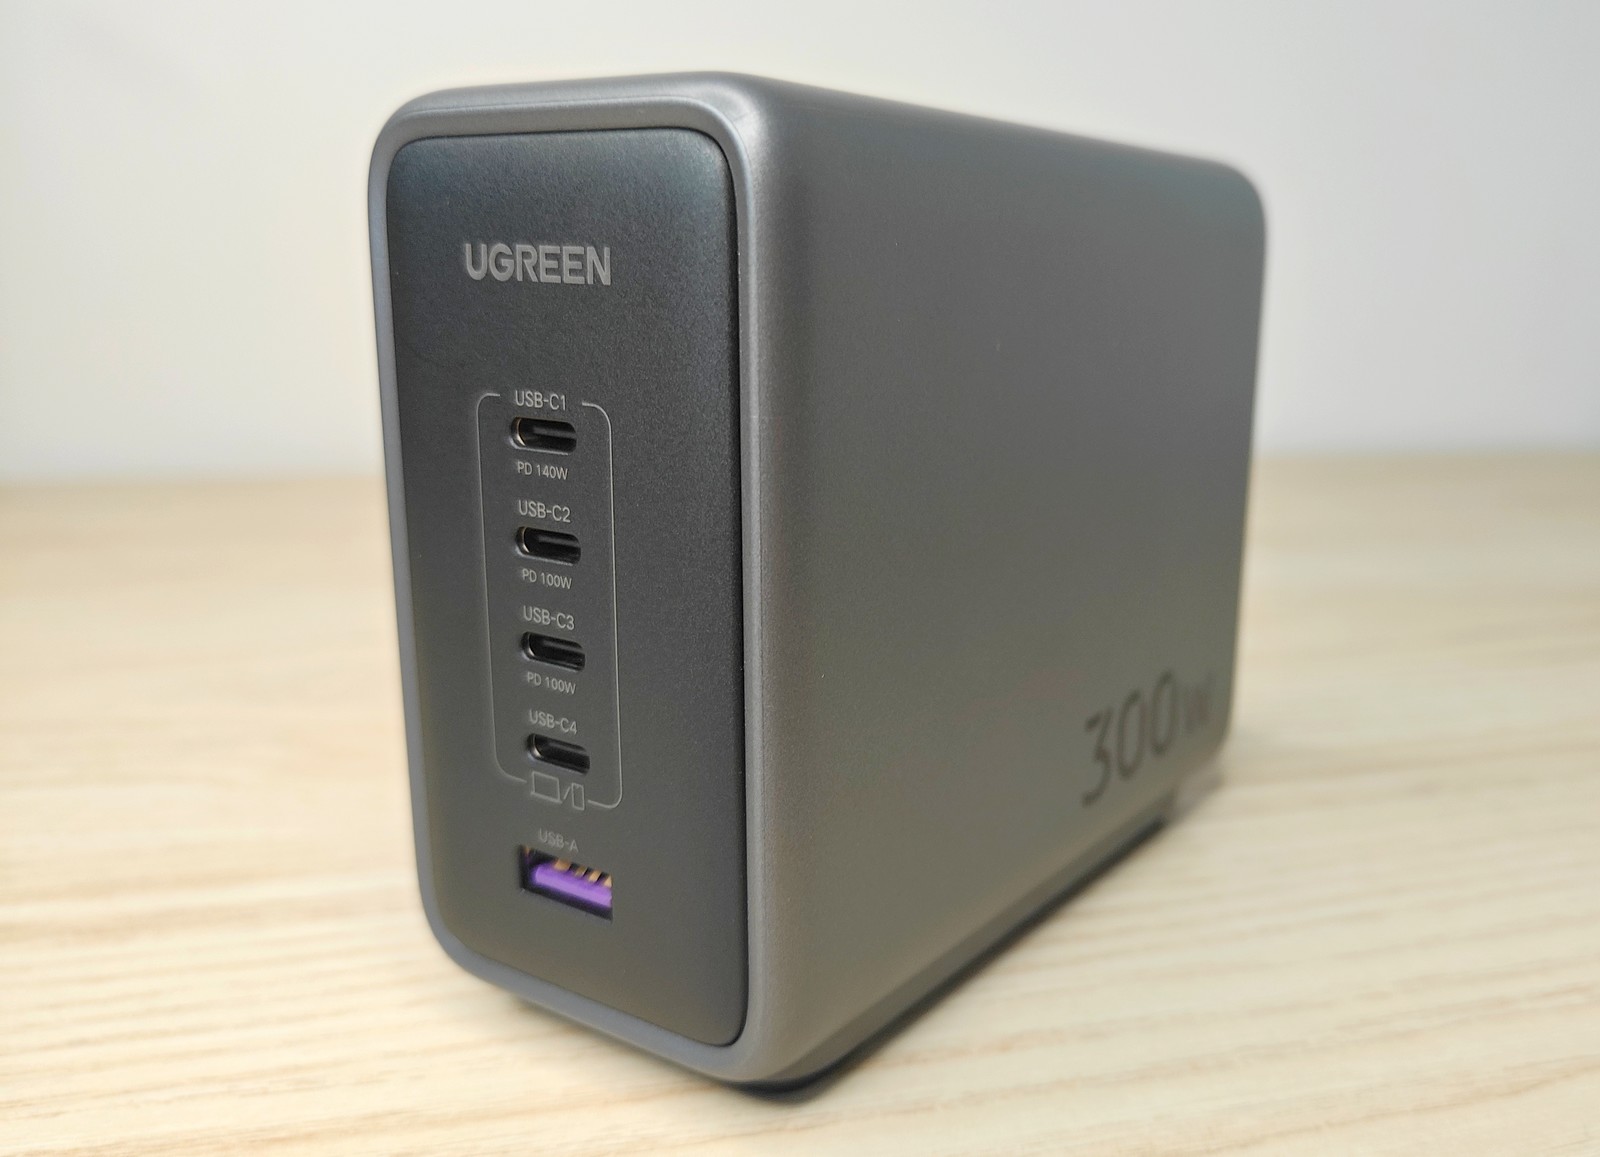 Le test multimédia du chargeur ultra-puissant Ugreen Gan X 100W